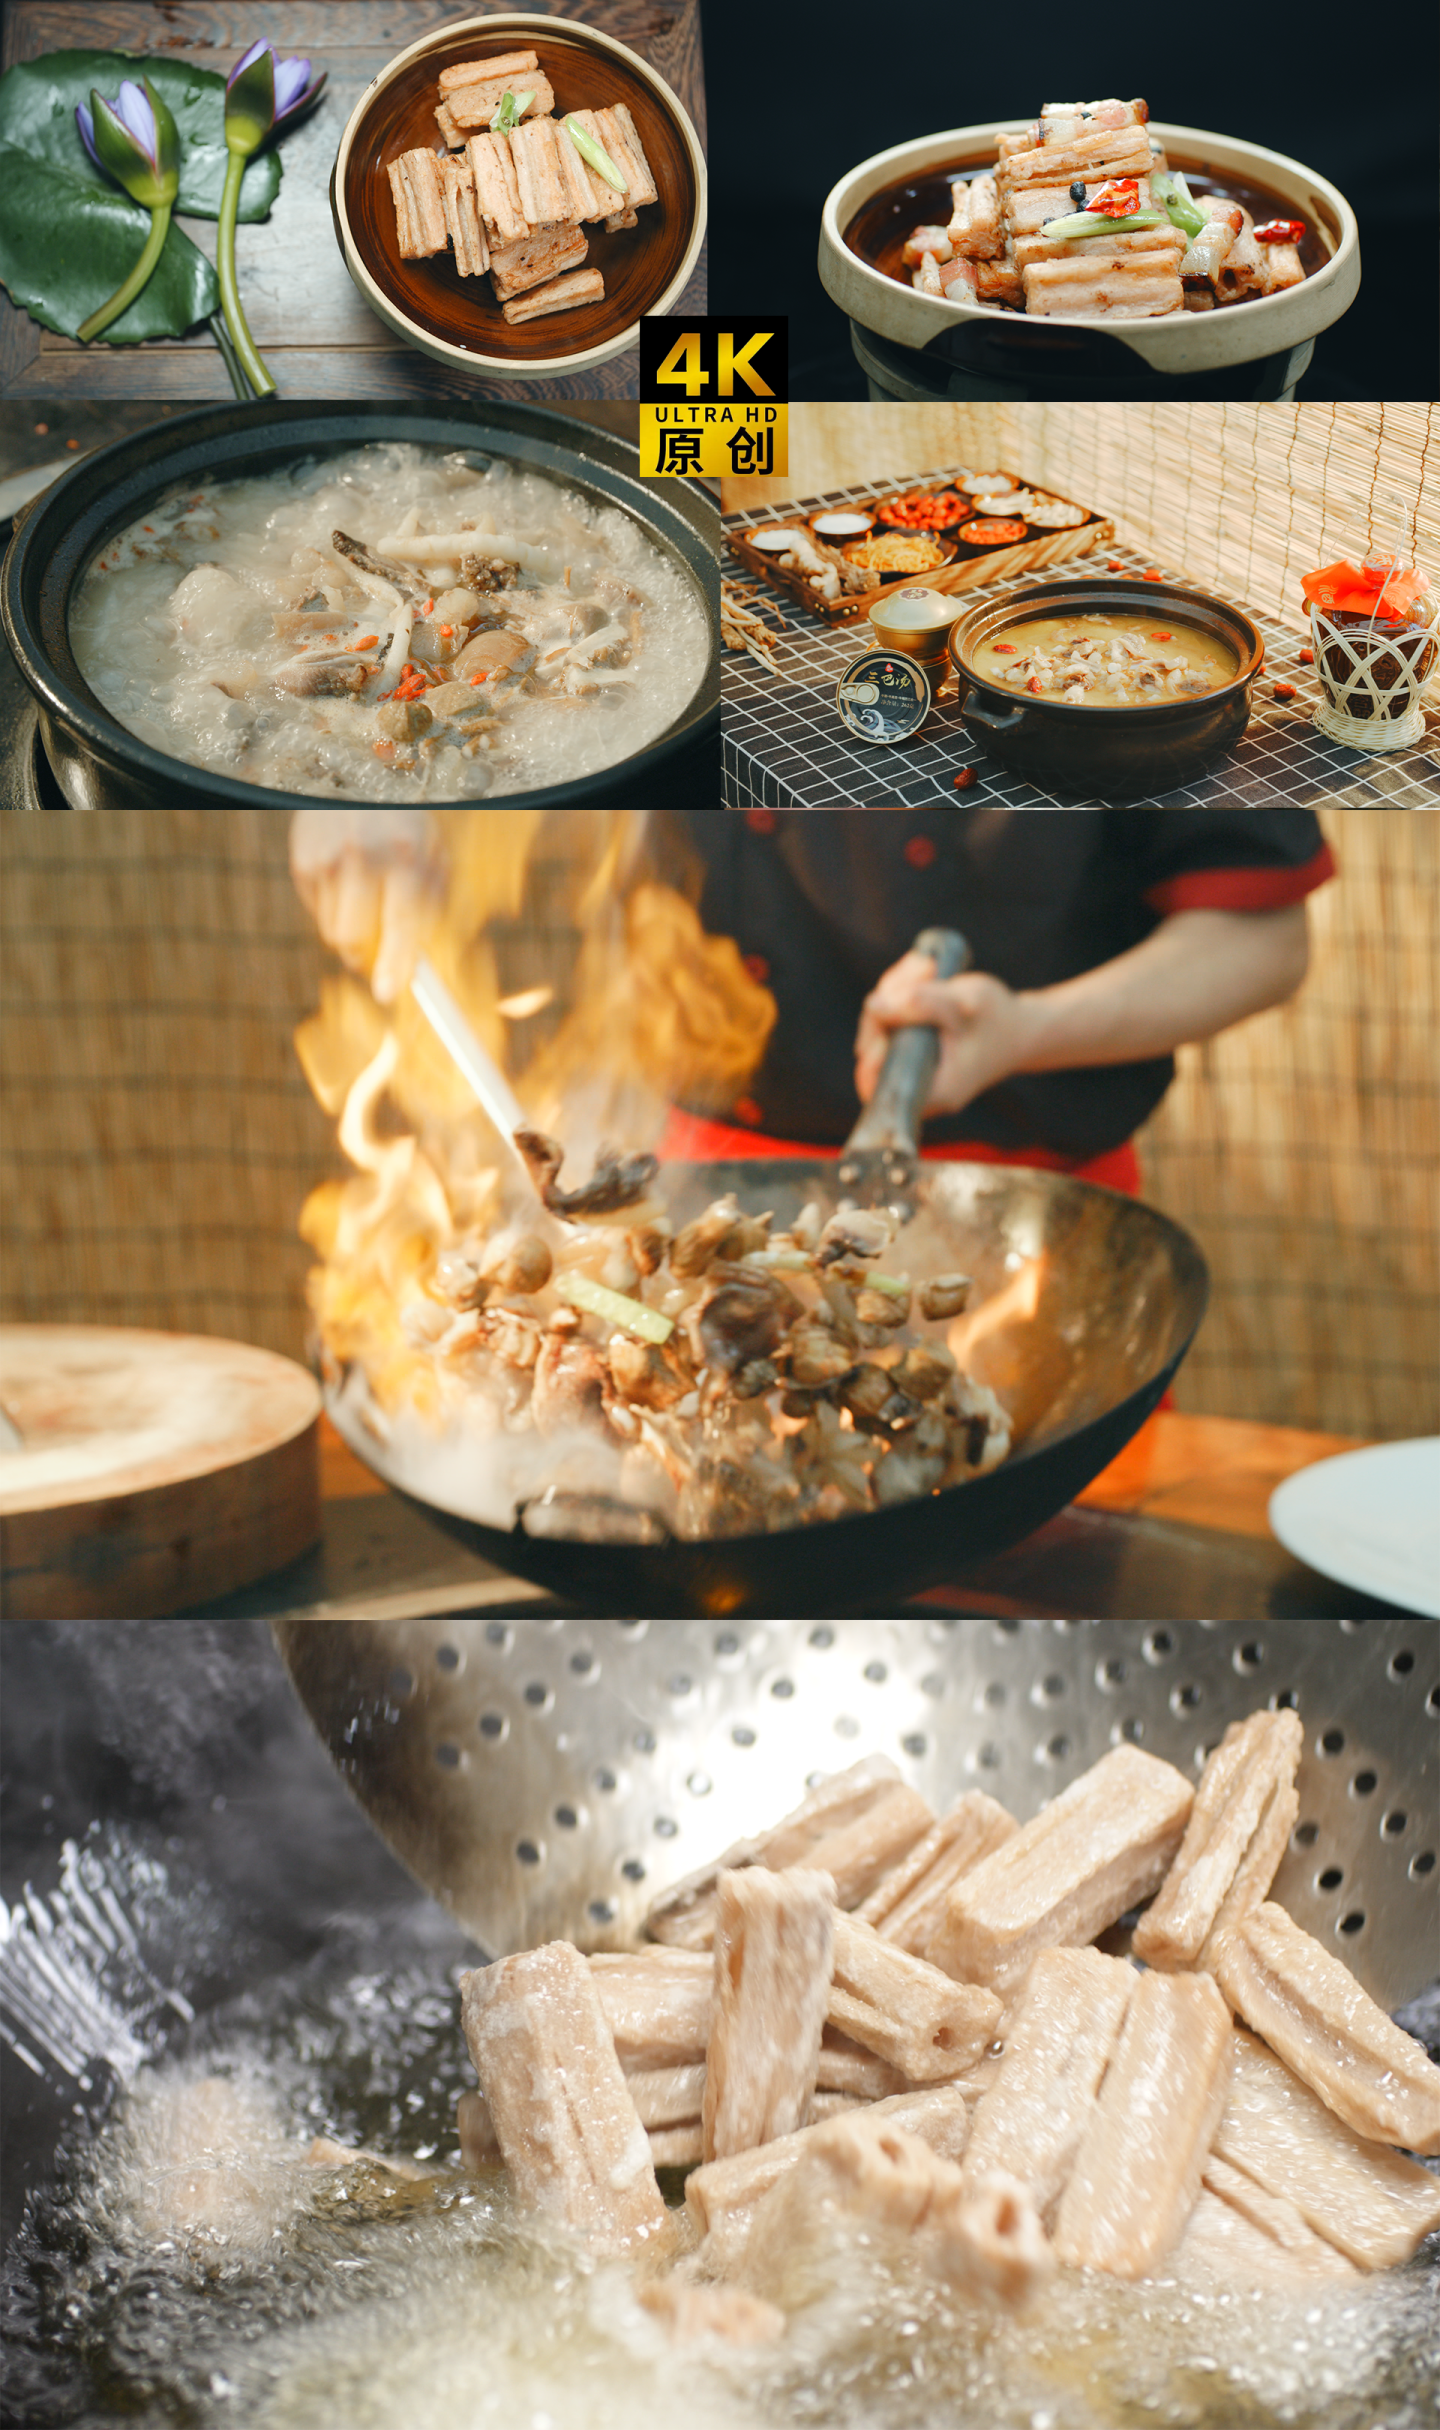 荷香藕条红豆腐三巴汤的美食制作